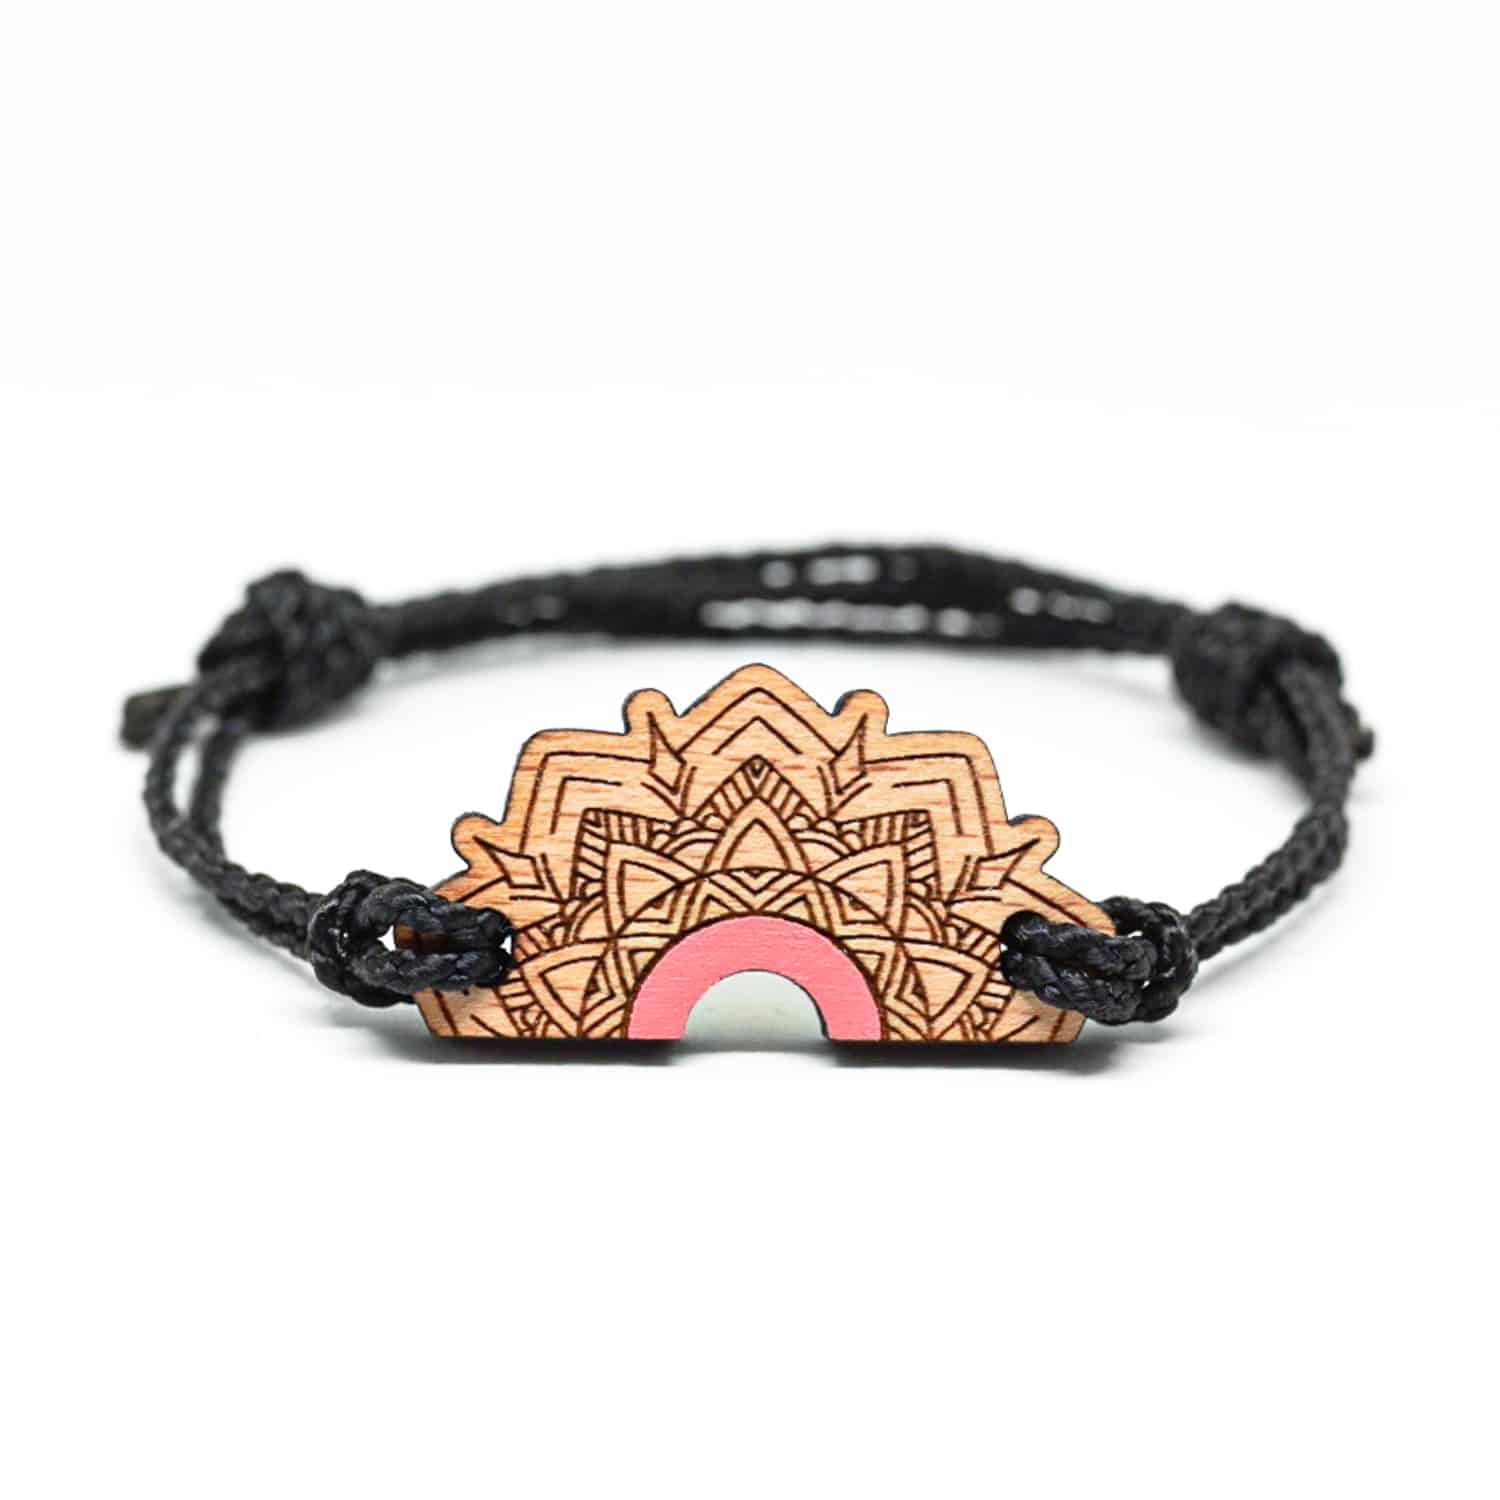 Bracelet en bois pourpre pastel inspiré des mandalas